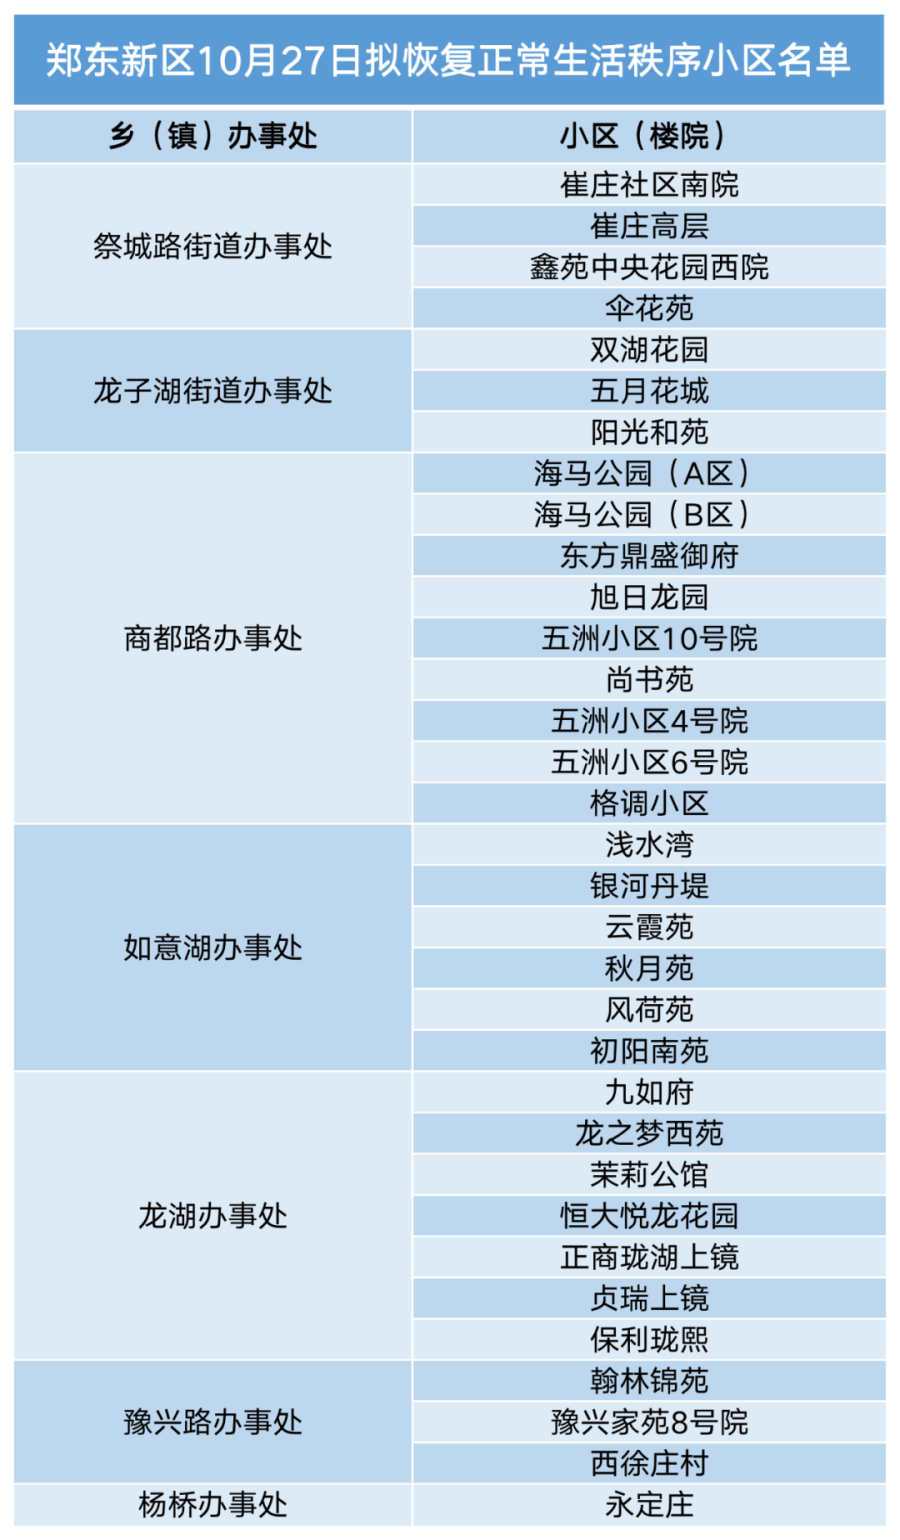 郑东新区发布10月27日起拟恢复正常生活秩序居民小区名单